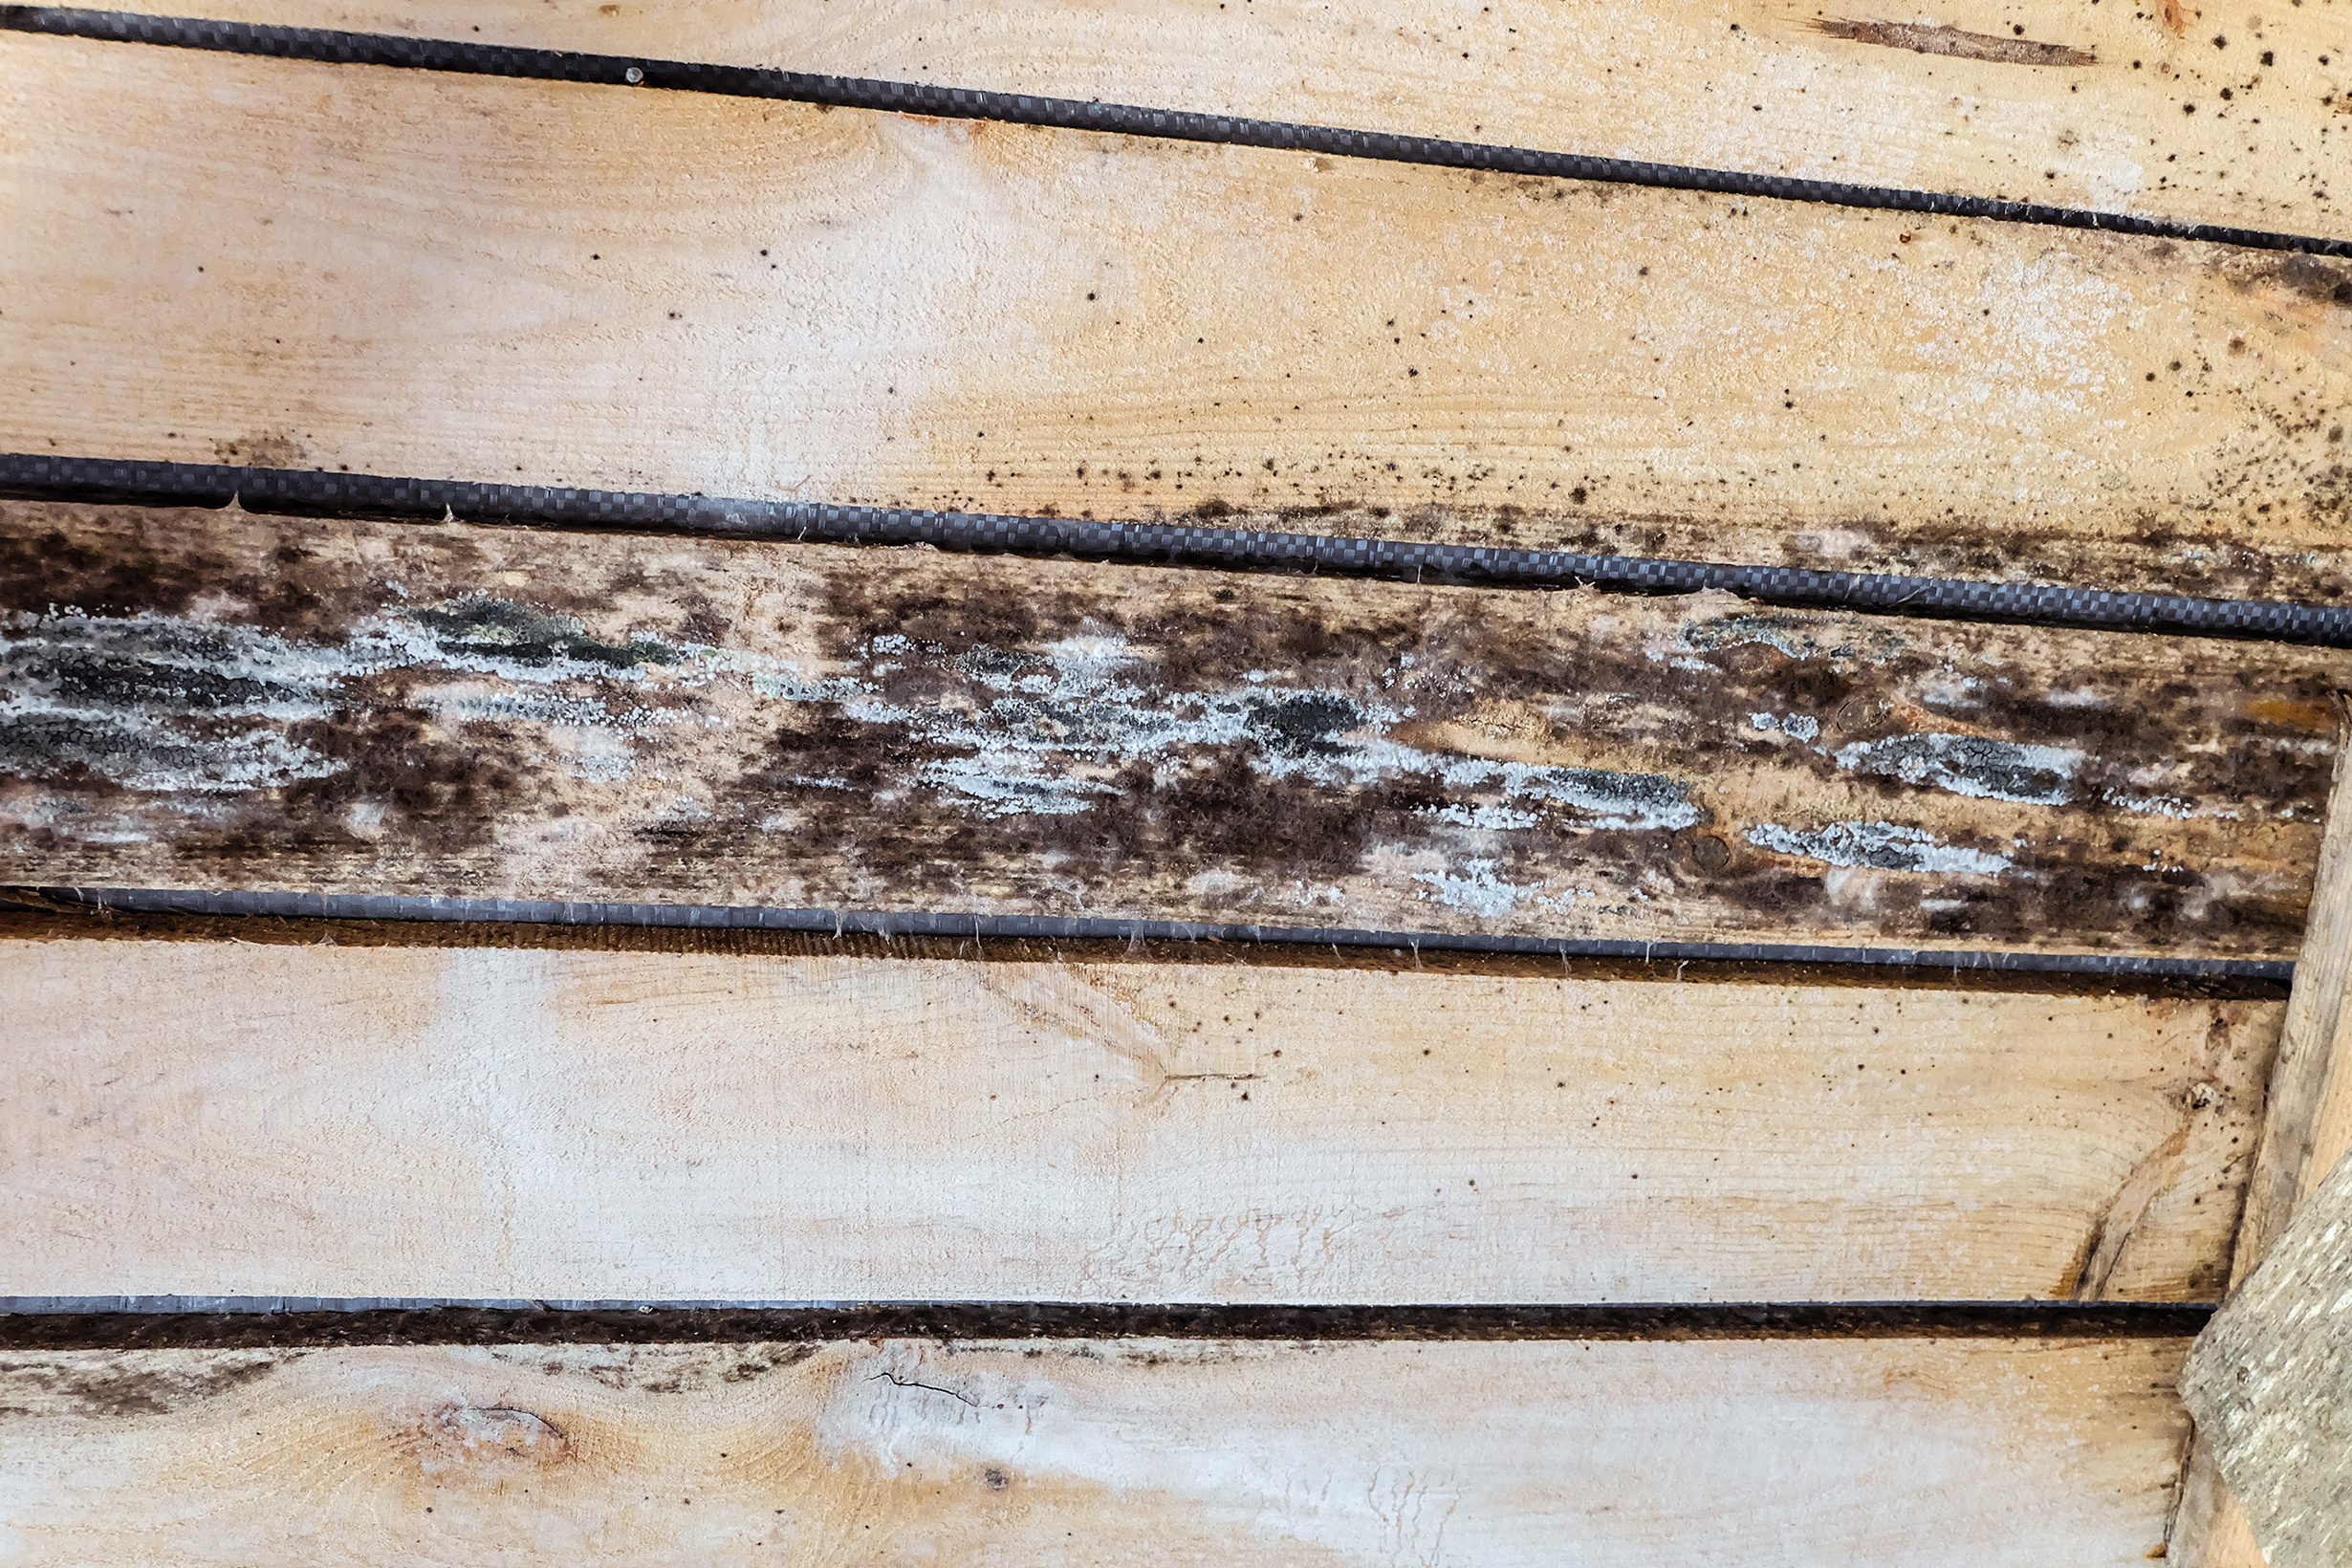 Wood rot